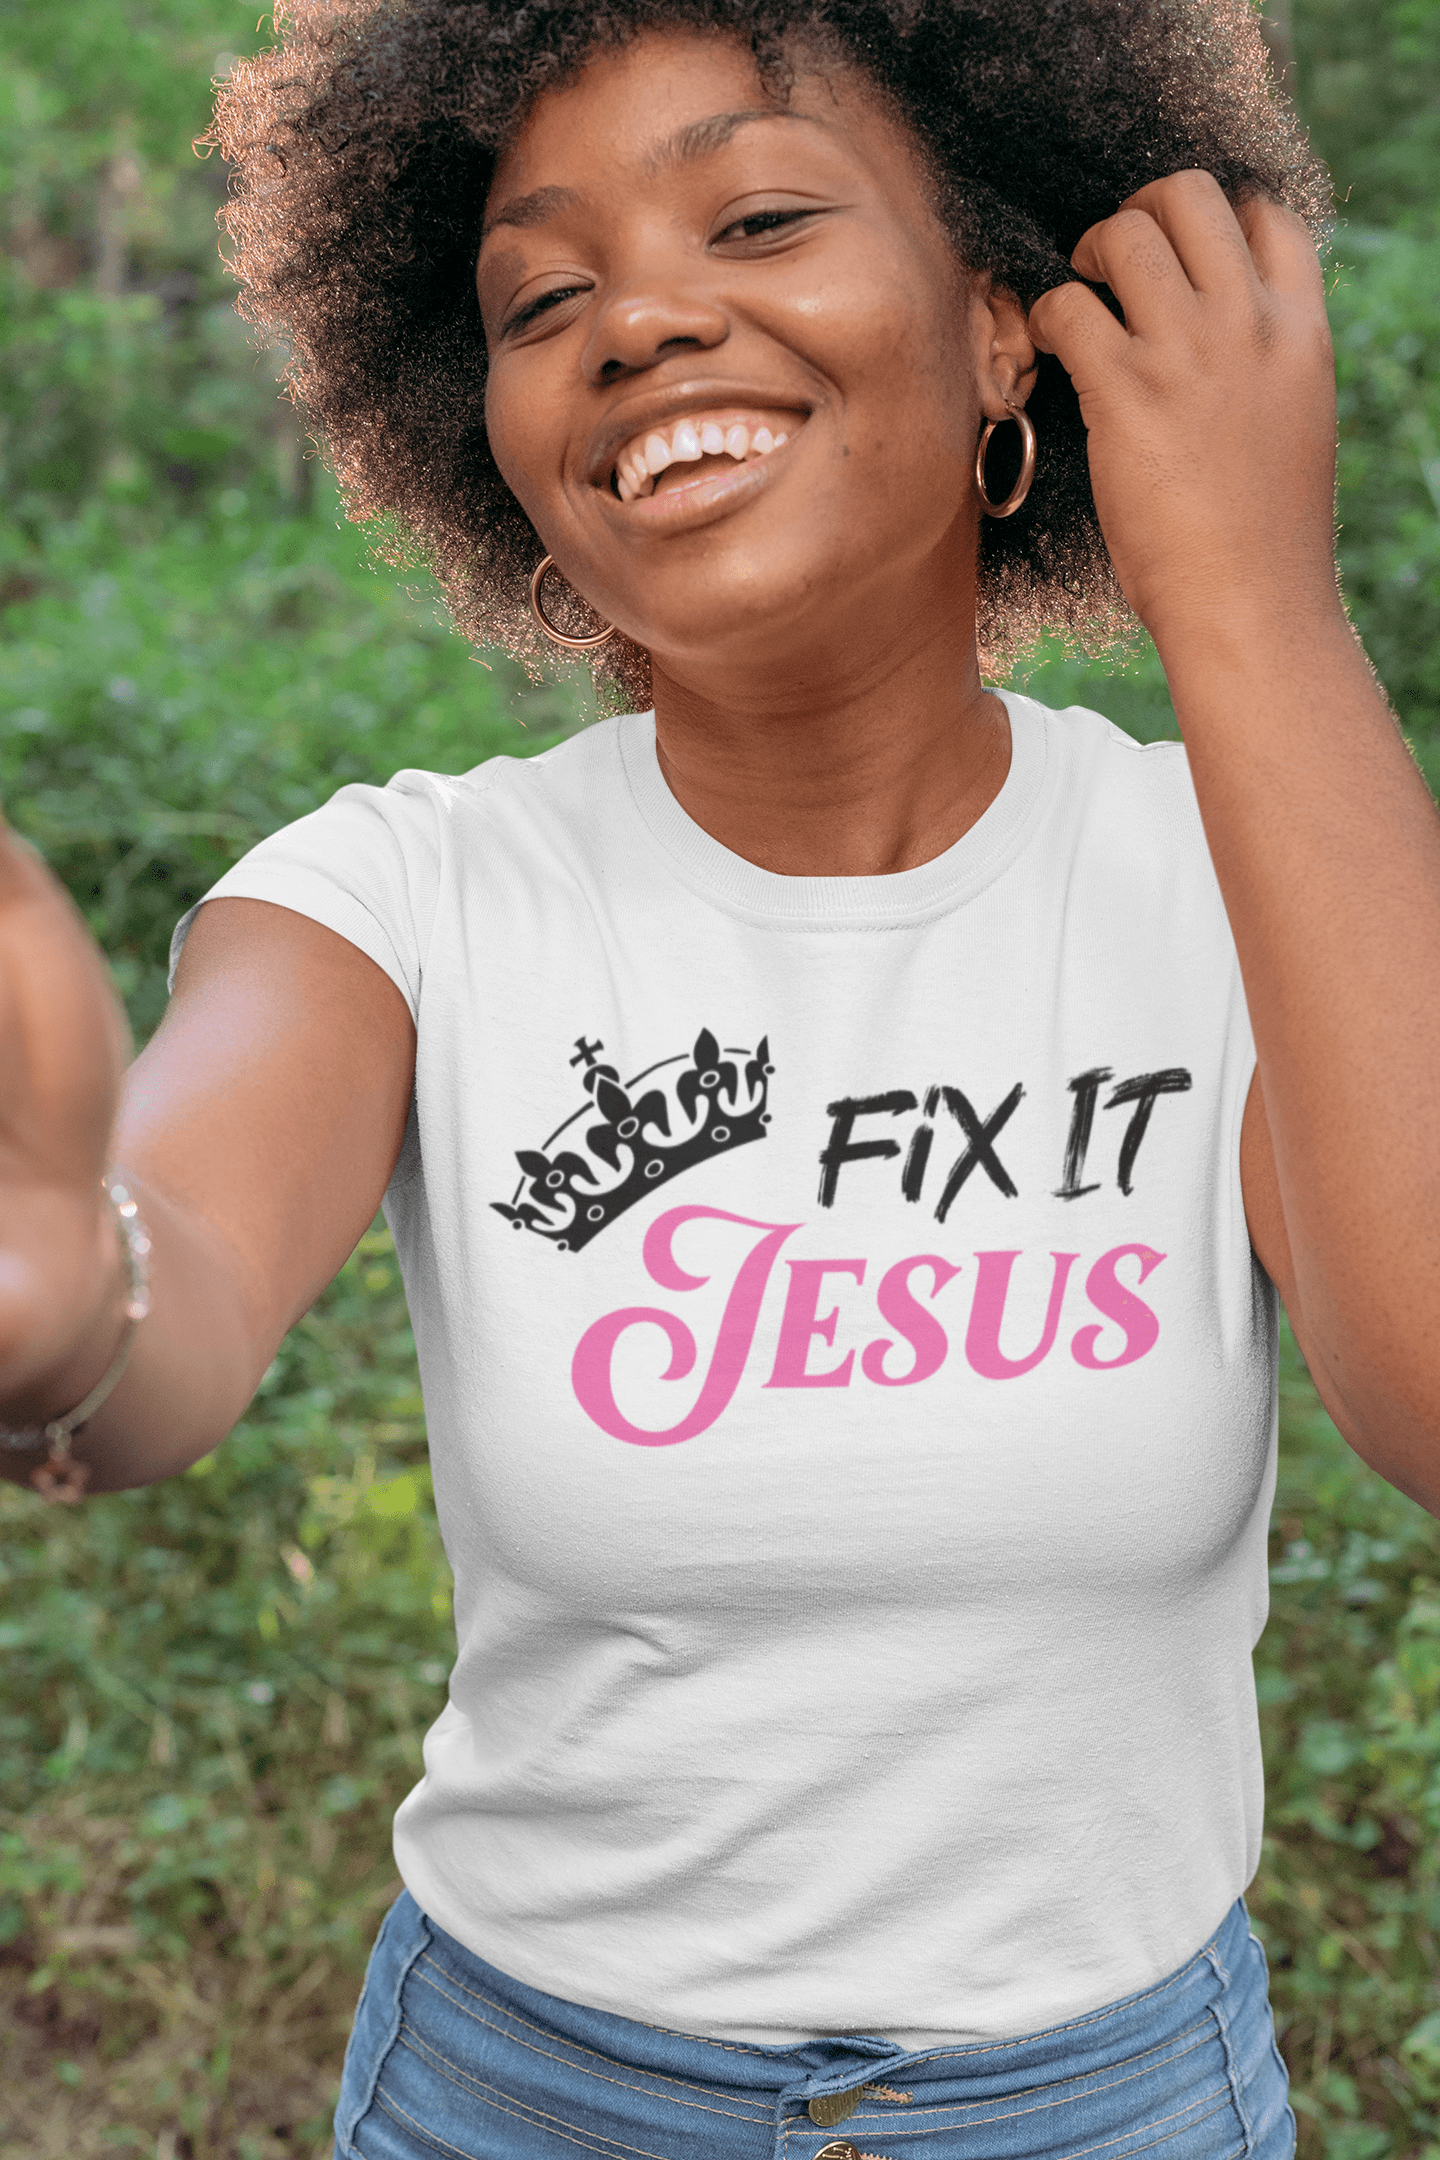 Fix It Jesus - Unisex T-Shirt - The Imperial